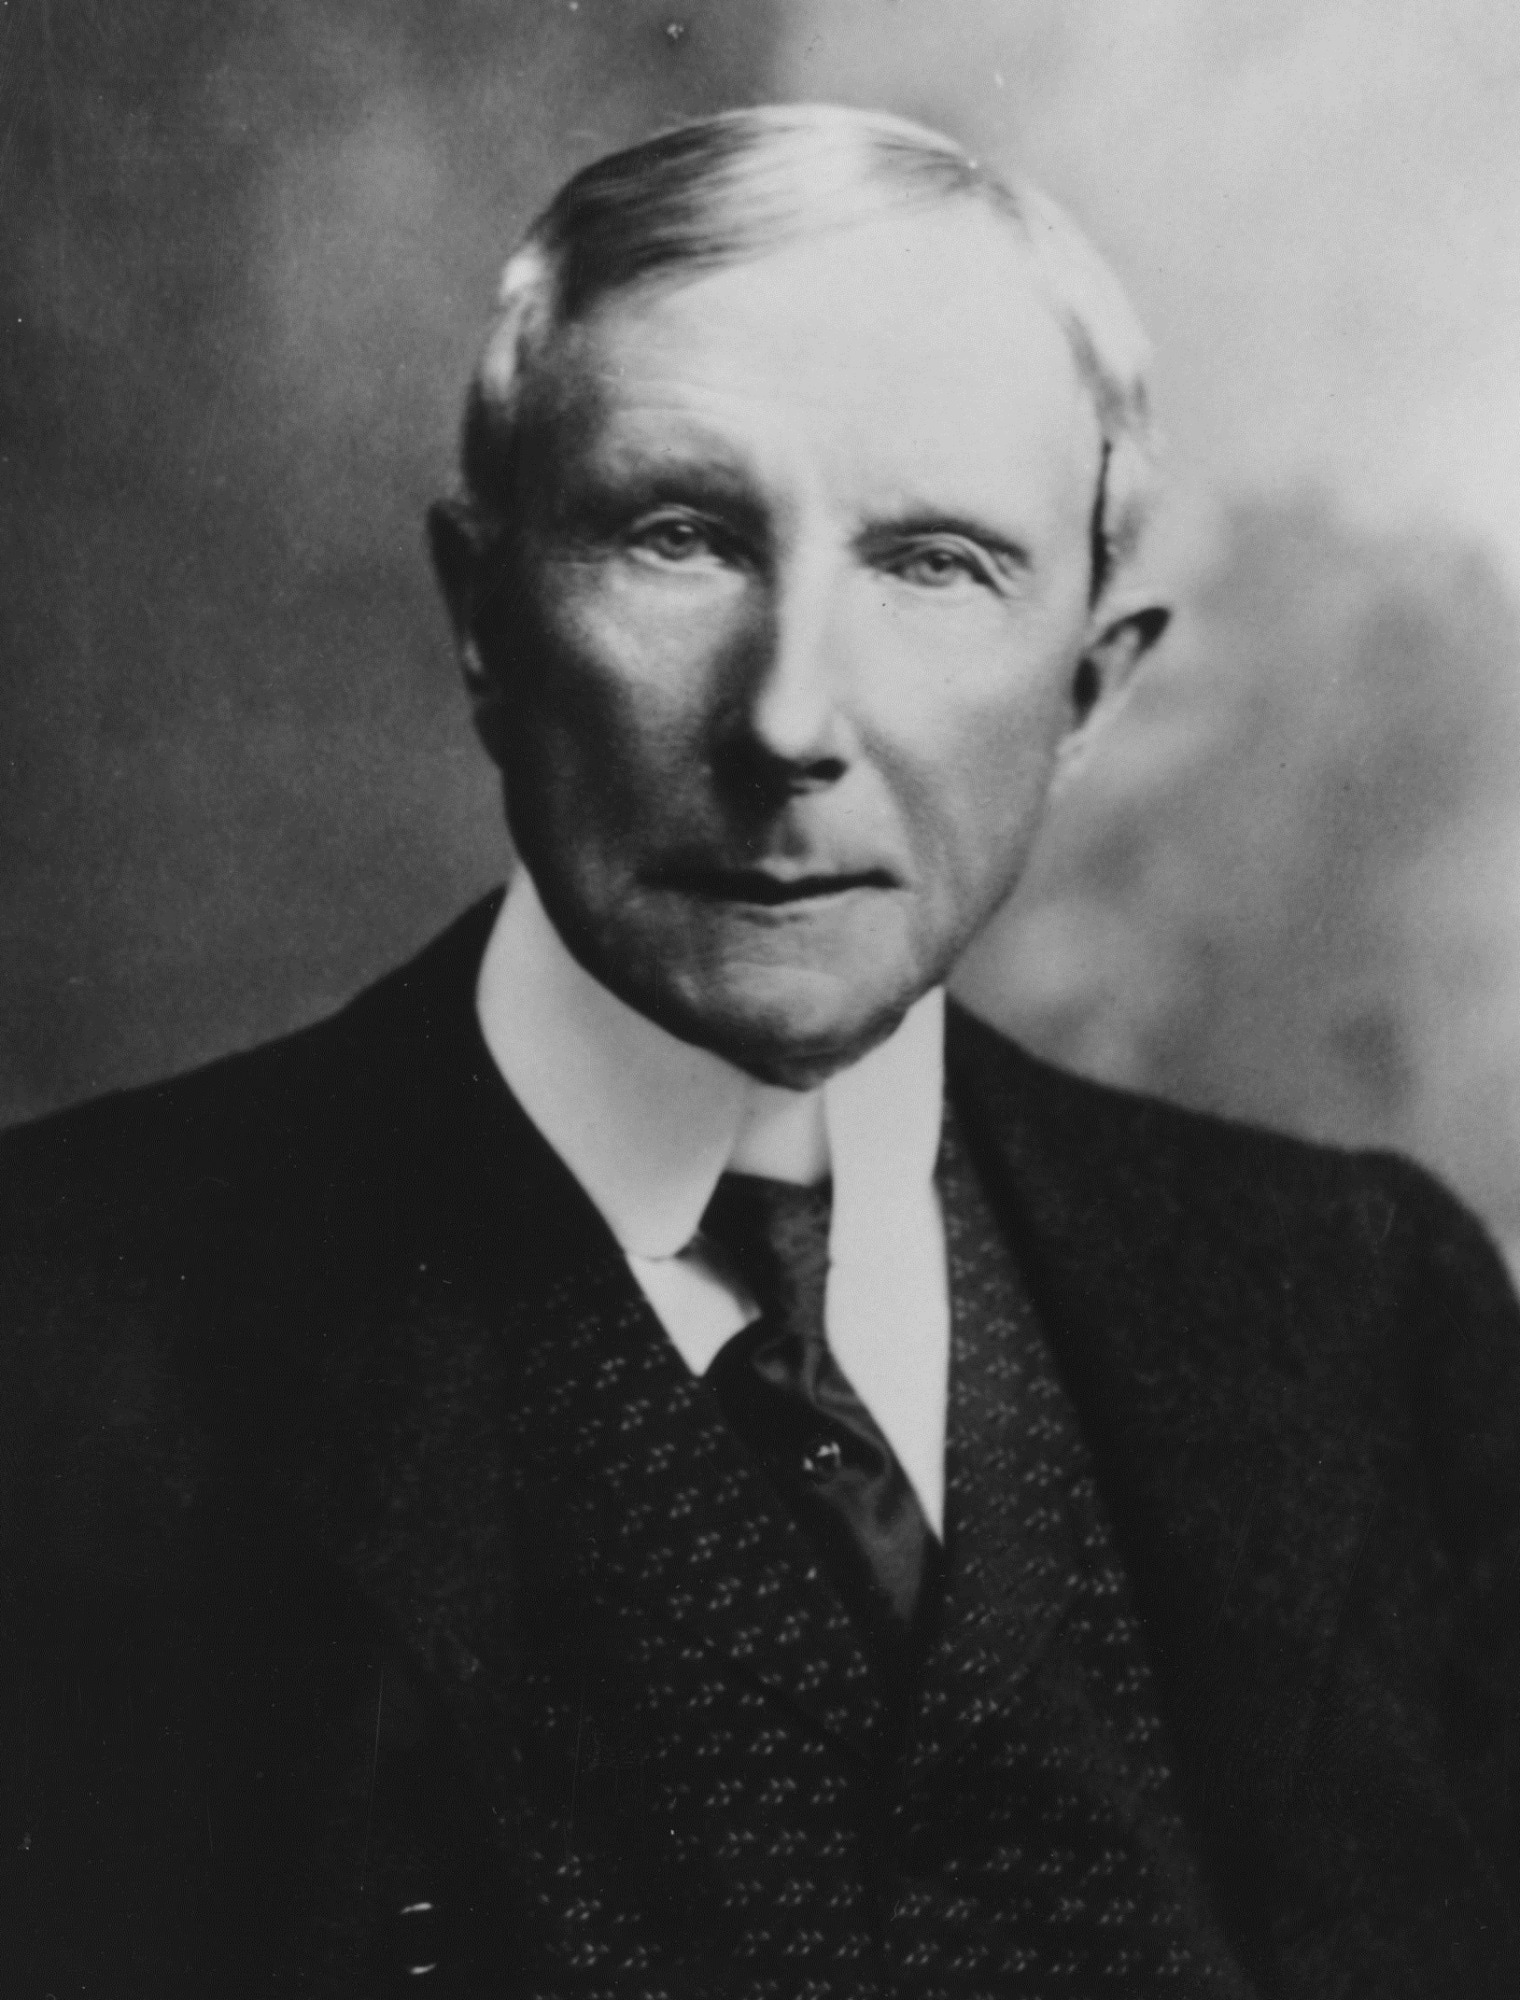 John Davison Rockefeller 1839-1937, c. 1901